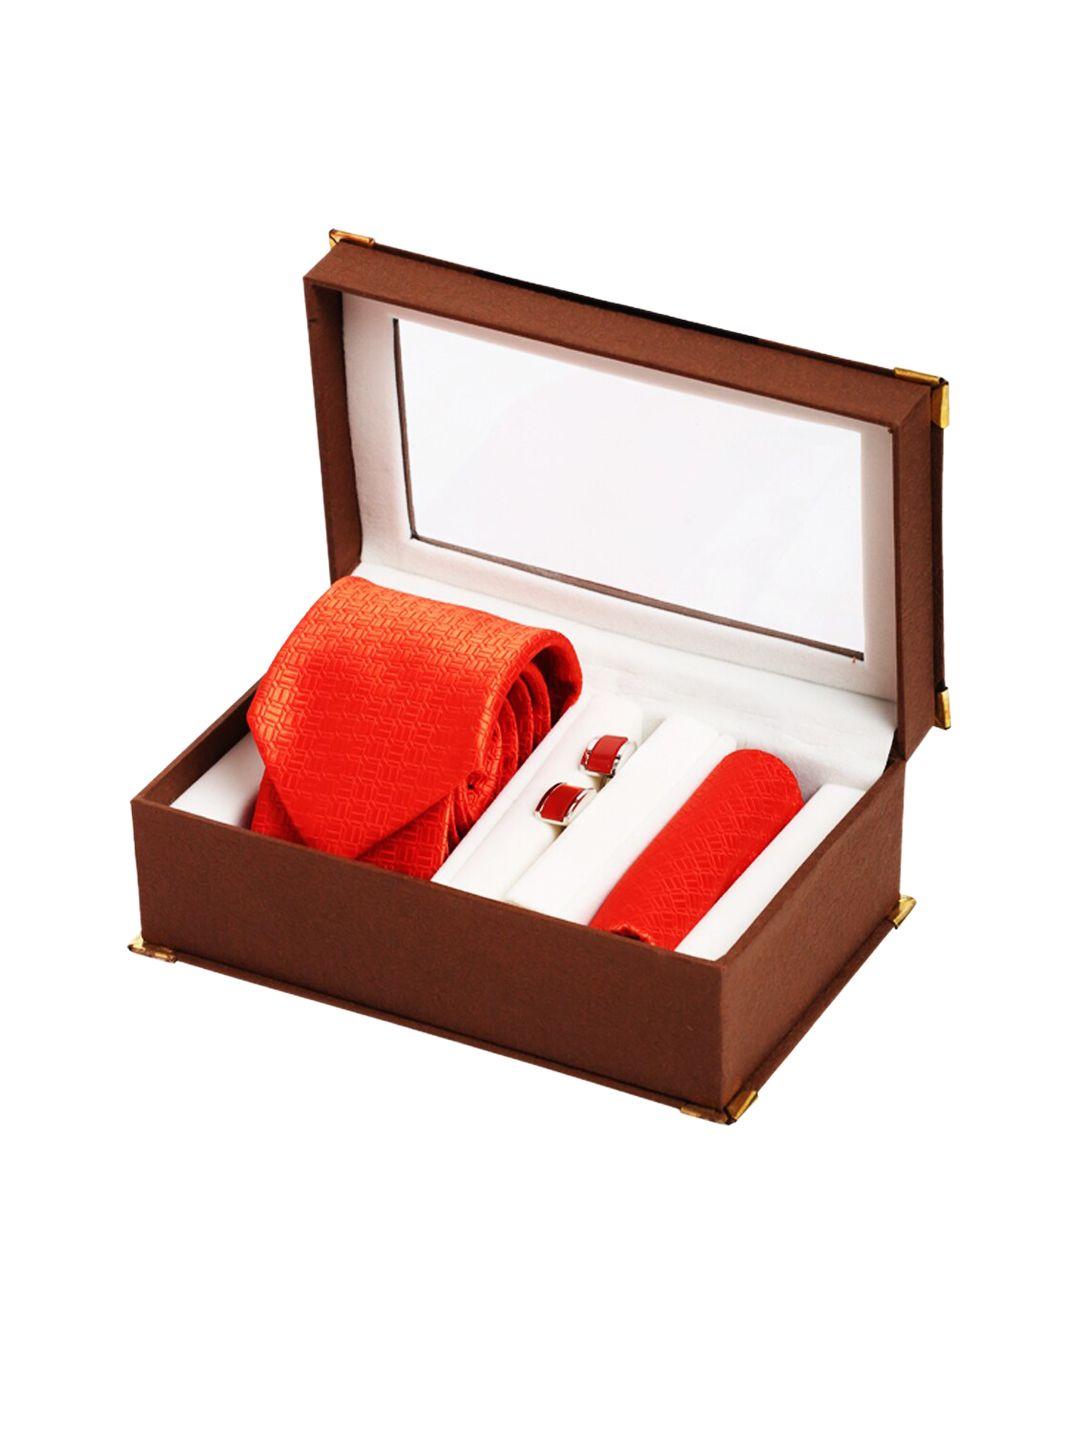 alvaro-castagnino-men-red-accessory-gift-set